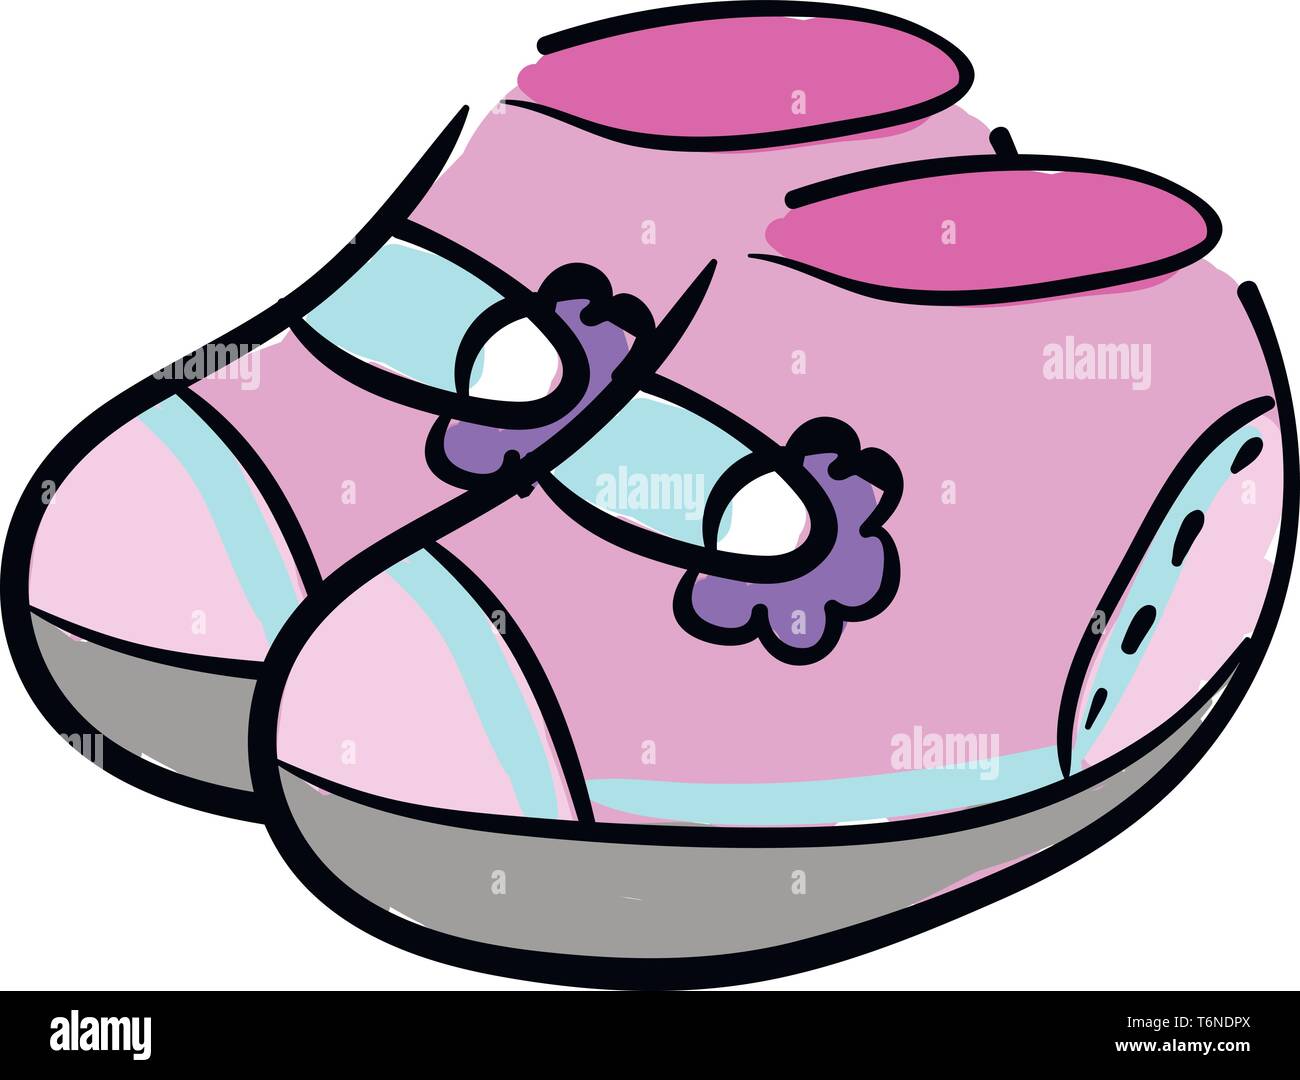 Clipart für ein Paar Schuhe rosa Farbe mit blau gefärbten elastischen Trägern und mit schönen violetten florale Designs und einen Aschegehalt b bedruckt Baby's Stock Vektor